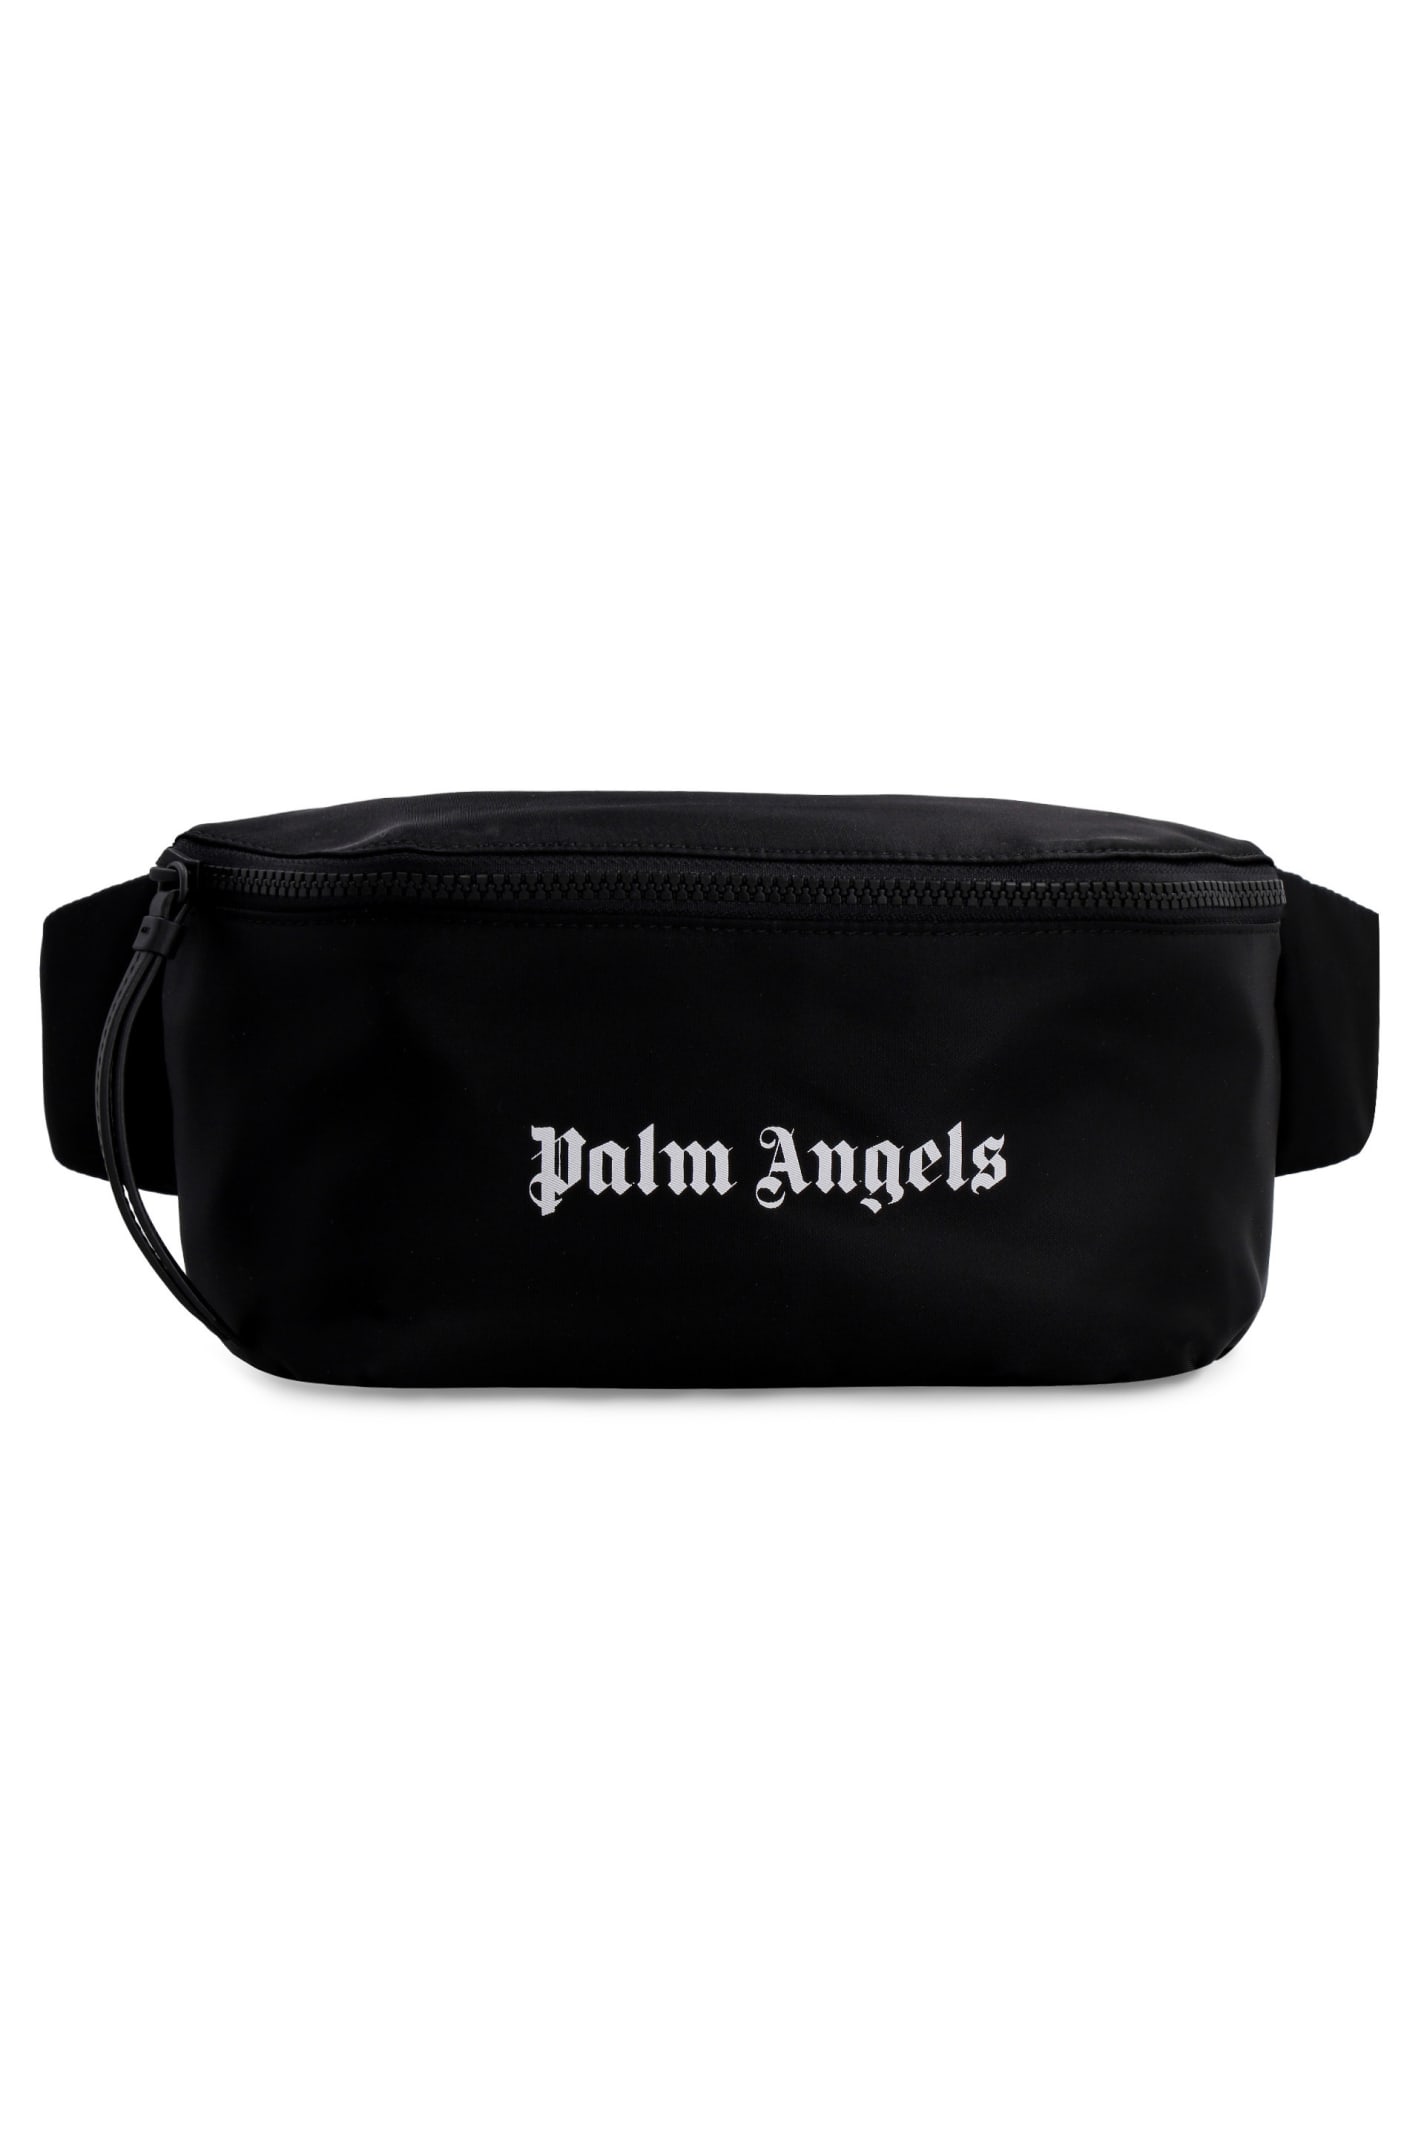 Palm Angels Nylon Belt Bag